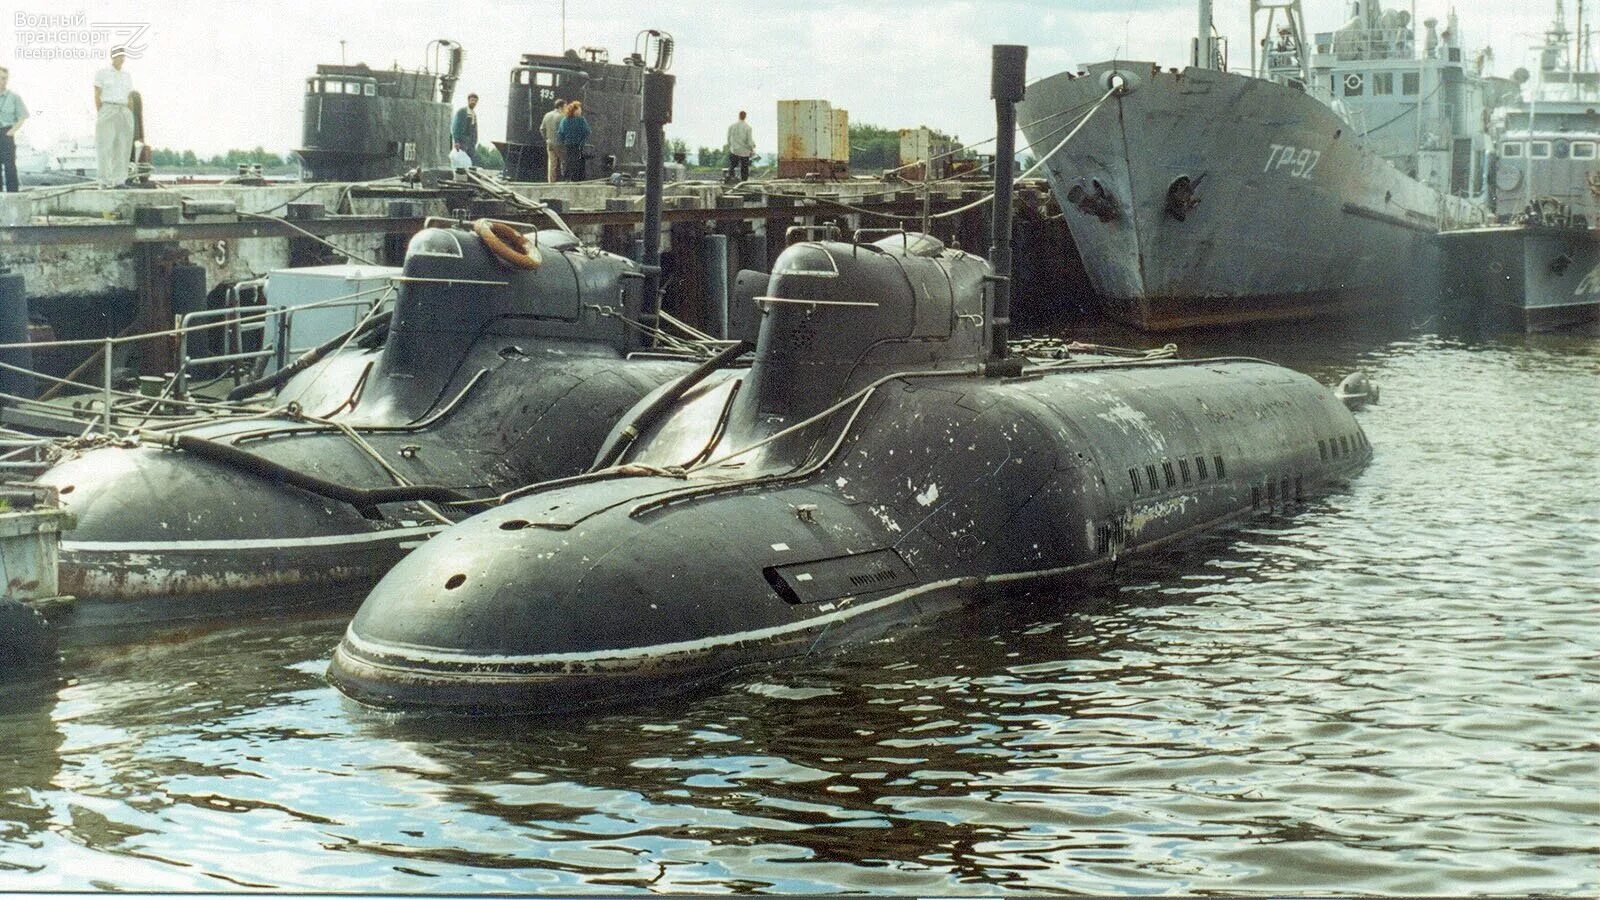 Подводные лодки проекта 865 «Пиранья». Подводная лодка Пиранья проект 865. Подводная лодка Малютка 1941-1945. Сверхмалой подводной лодки проекта 865 «Пиранья». Пл вцы